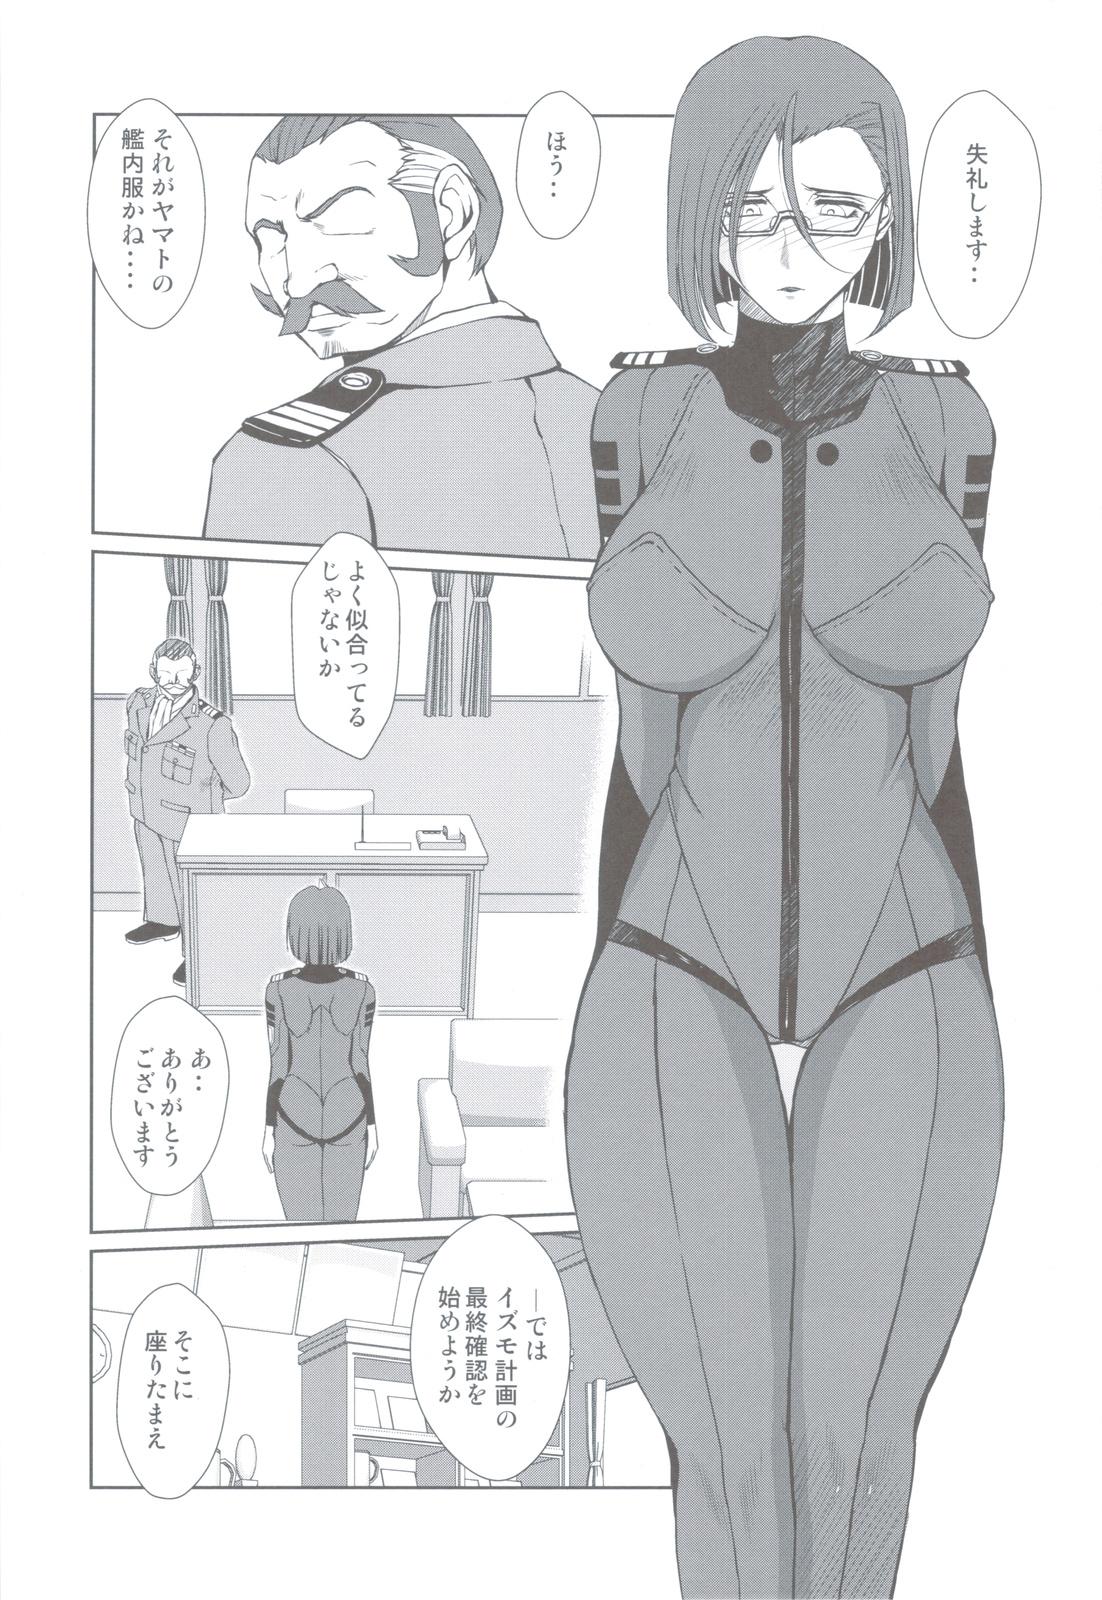 Threesome 2199-nen no Niimi Kaoru - Space battleship yamato Bwc - Page 2